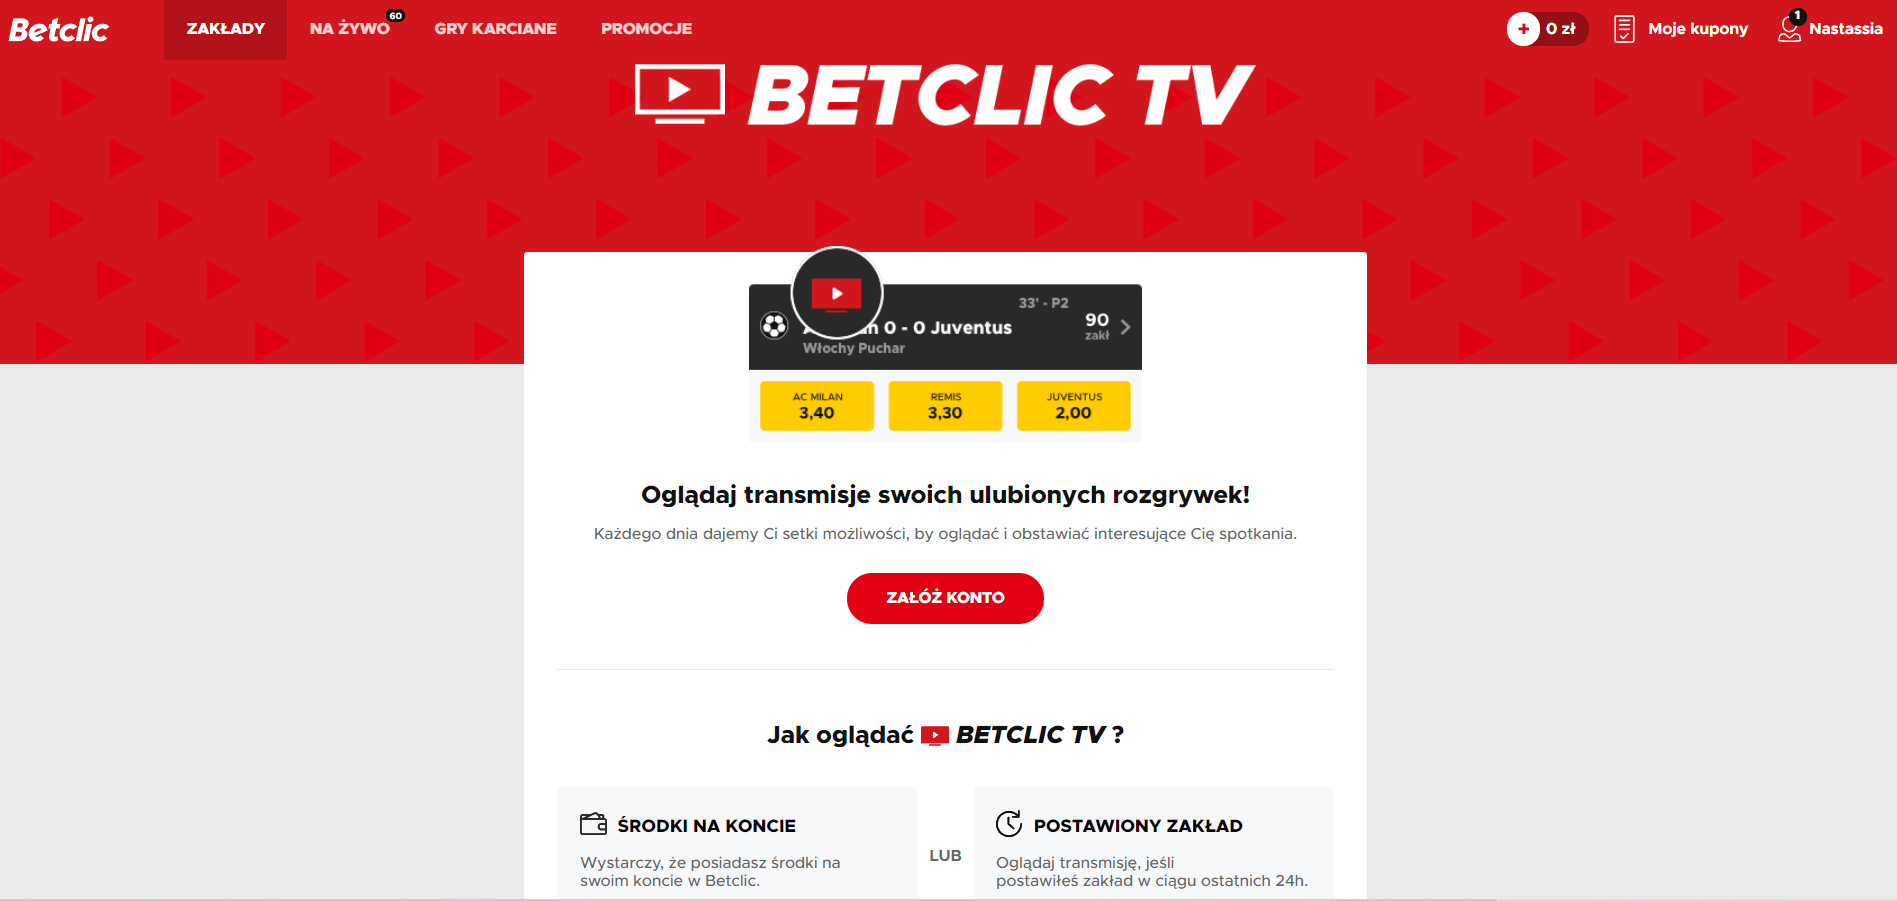 Jak działa Betclic TV?